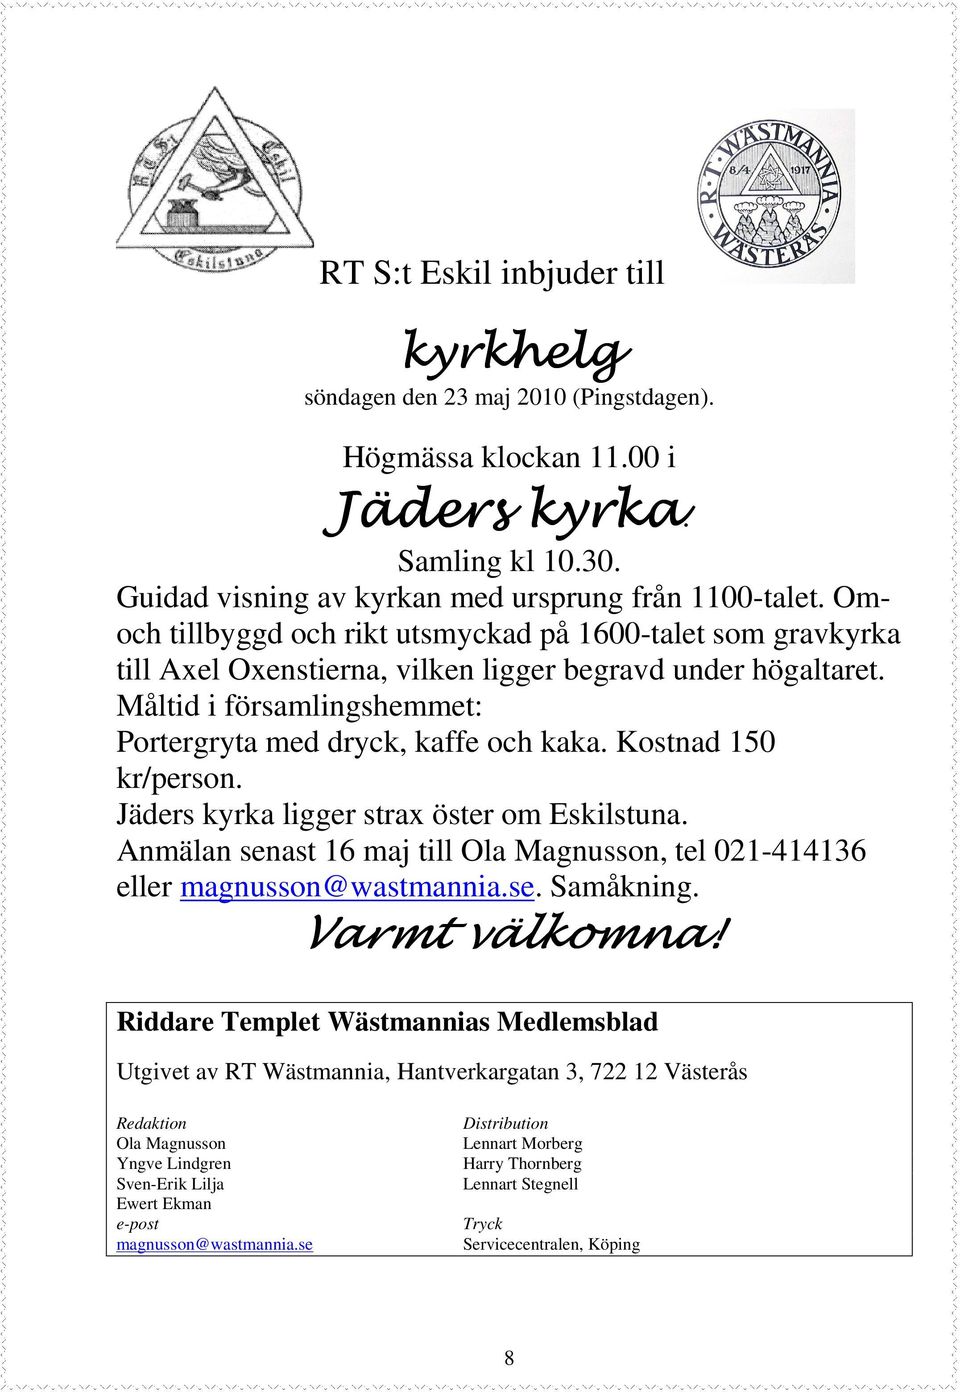 Kostnad 150 kr/person. Jäders kyrka ligger strax öster om Eskilstuna. Anmälan senast 16 maj till Ola Magnusson, tel 021-414136 eller magnusson@wastmannia.se. Samåkning. Varmt välkomna!